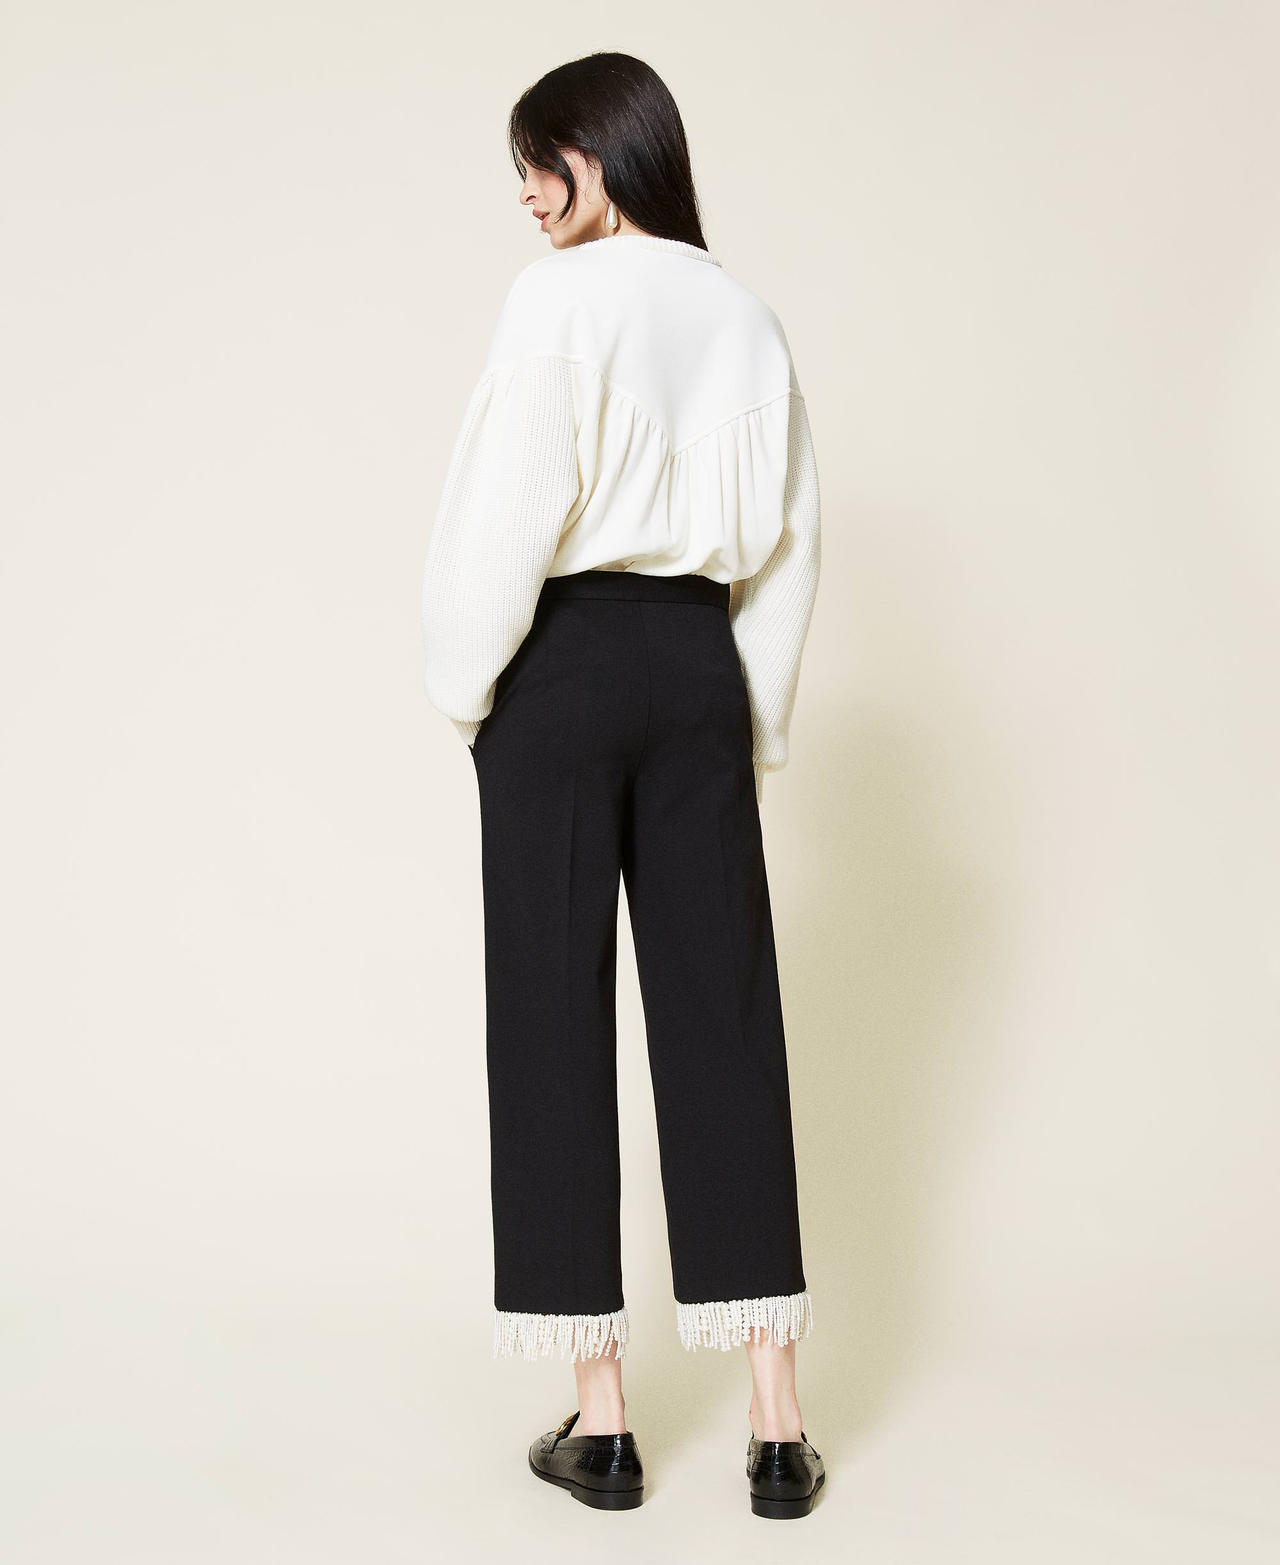 Pantalon cropped avec franges Noir Femme 212TP2530-03